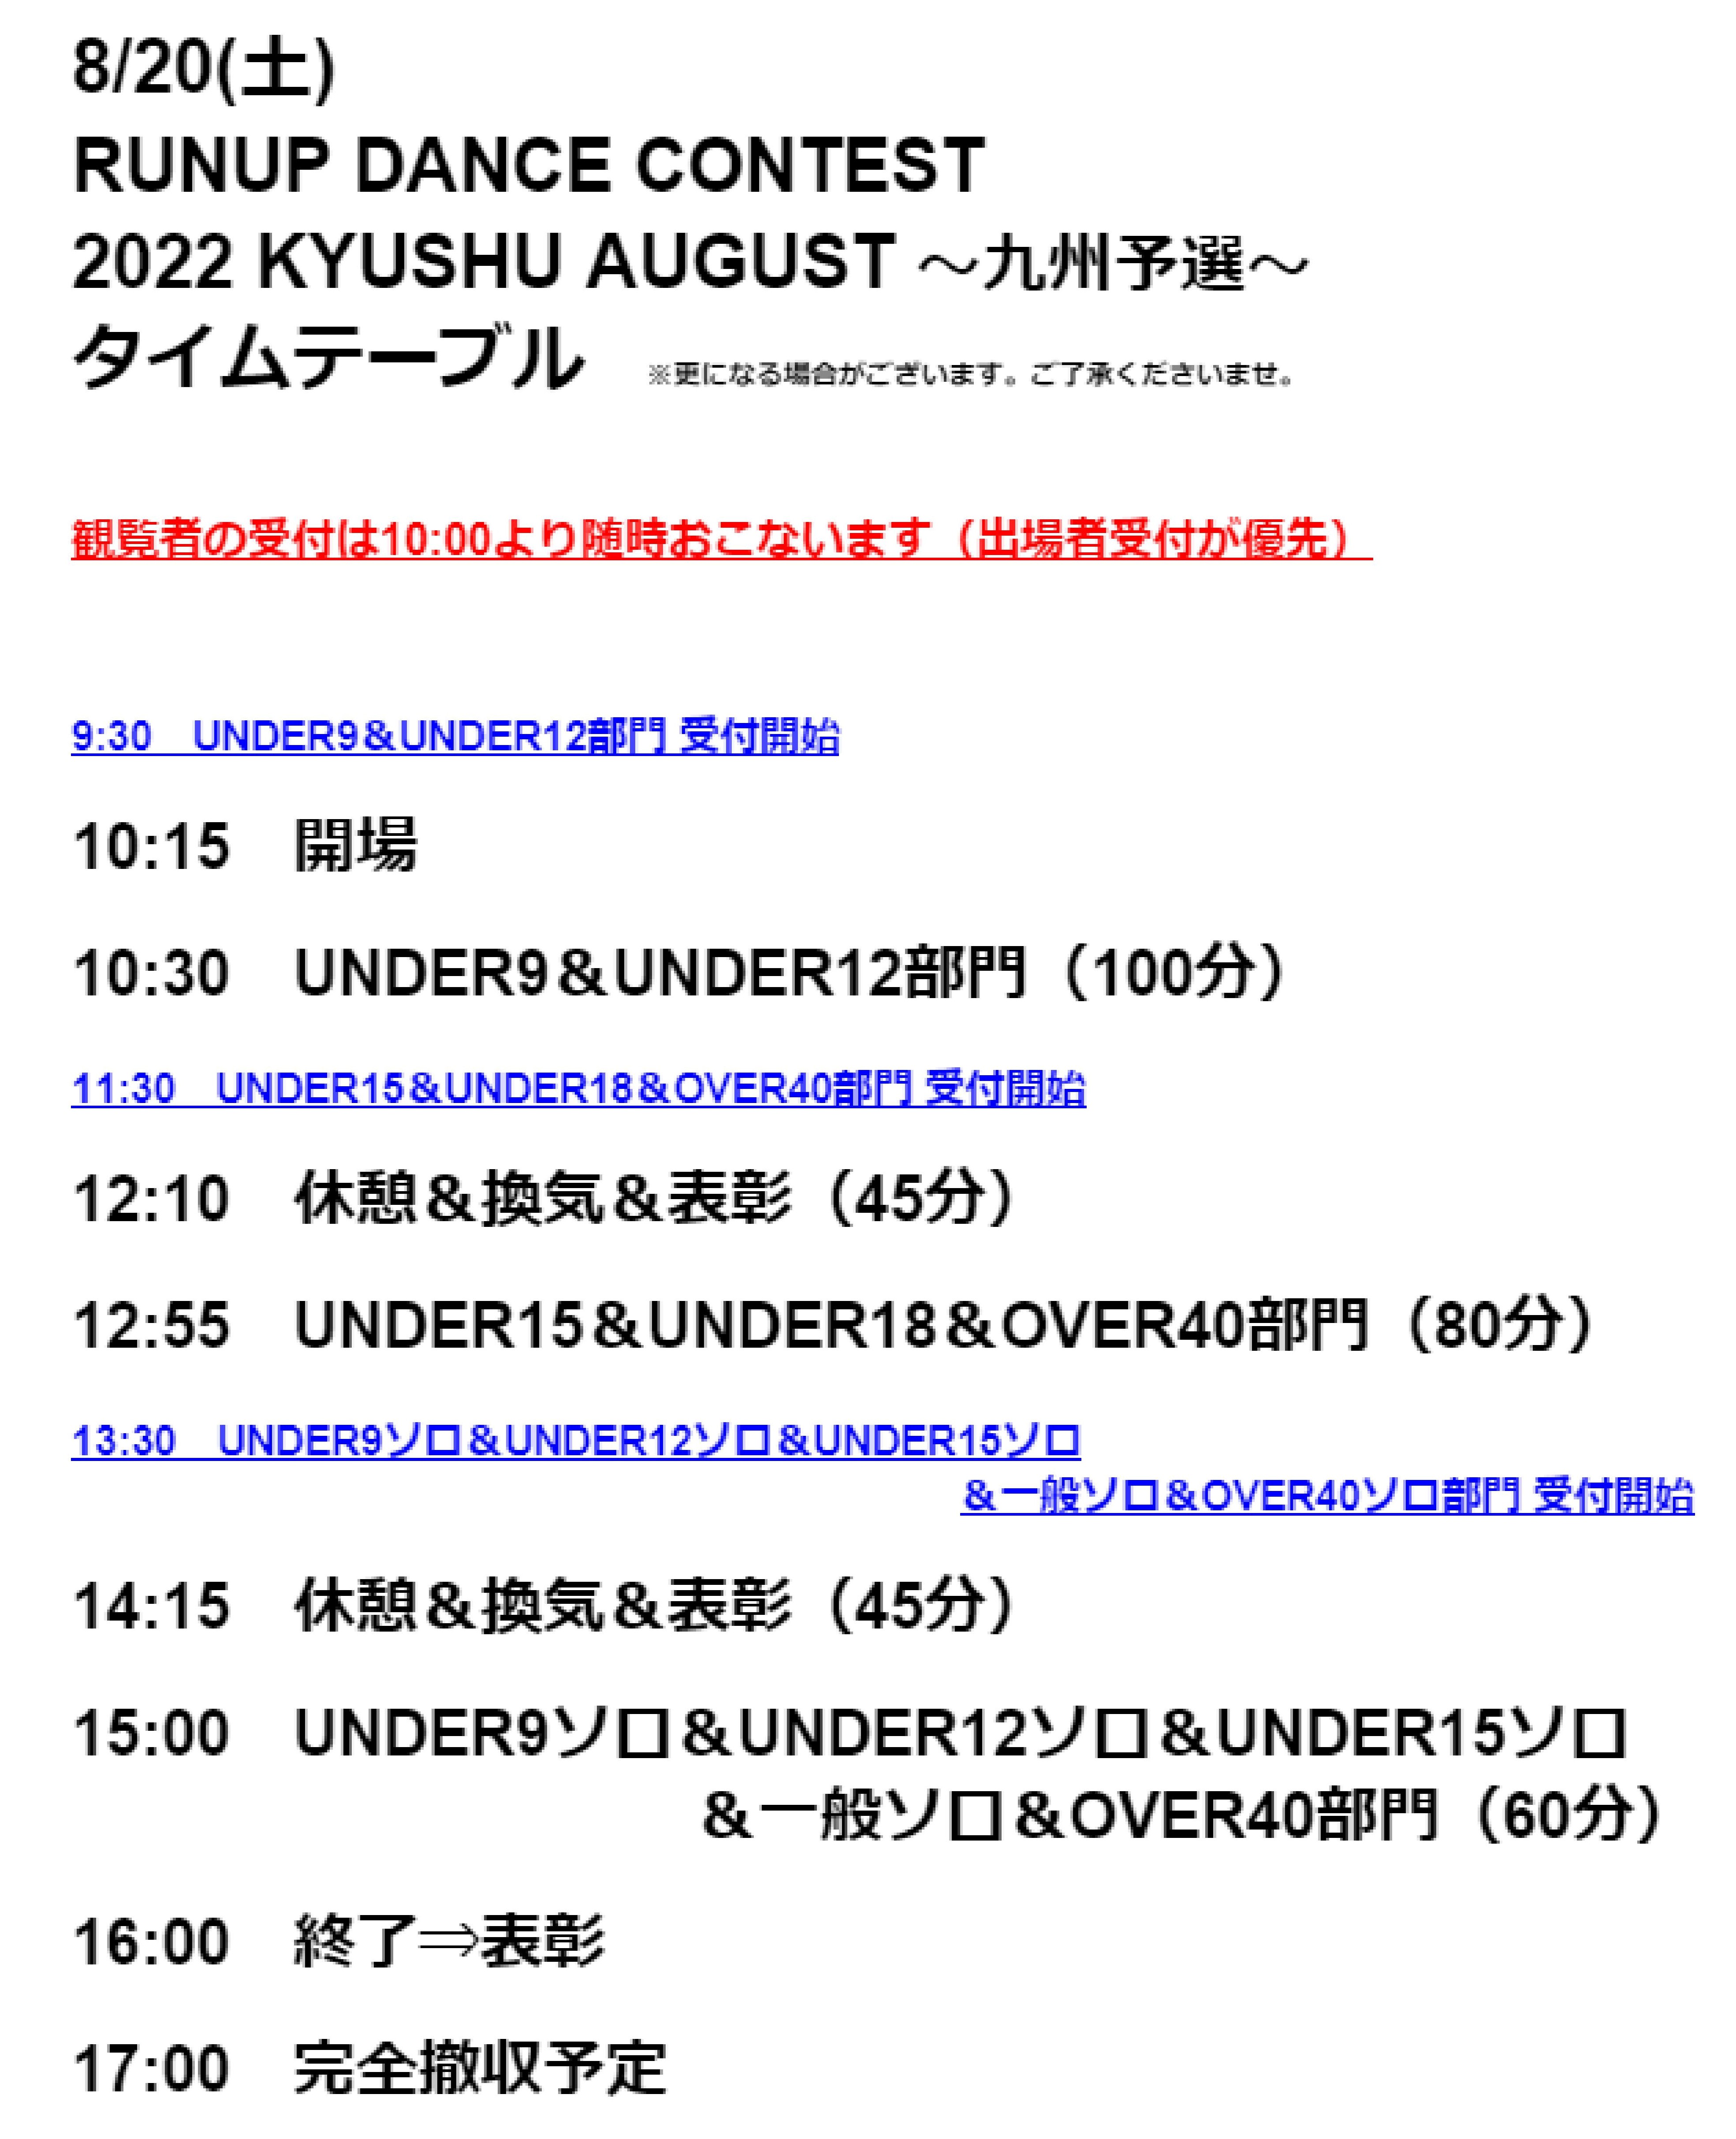 2022 KYUSHU AUGUST タイムテーブル 写真